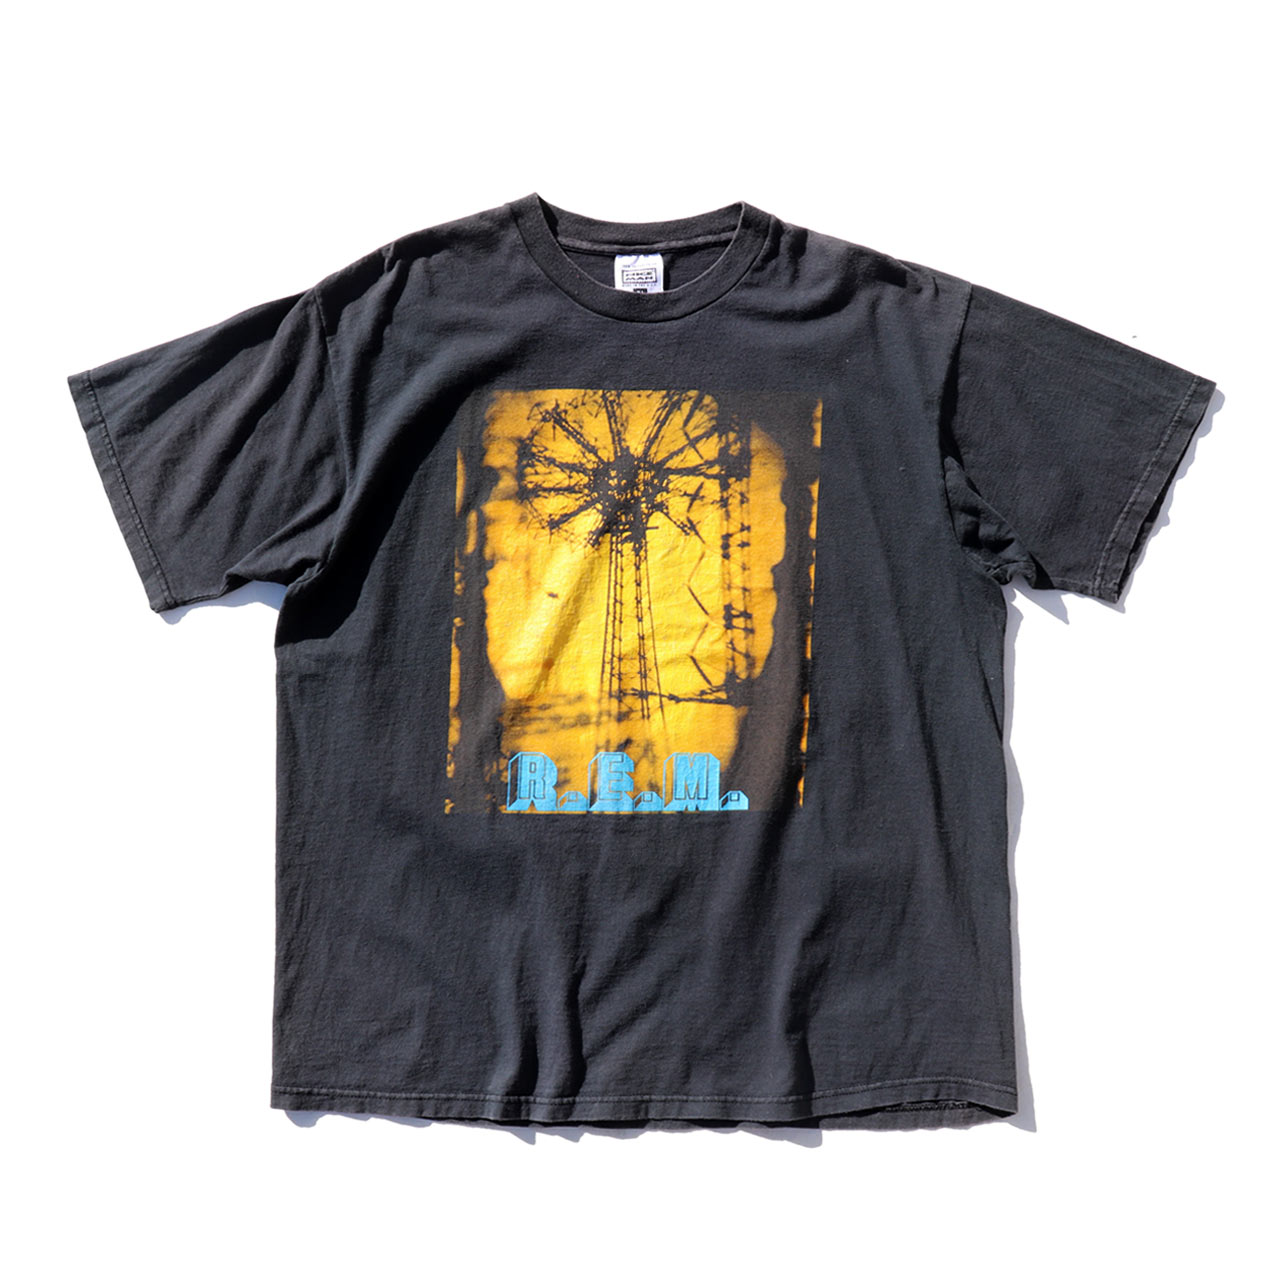 POST JUNK / 90's R.E.M. 1995 Tour T-Shirt Made In U.S.A. [XL]